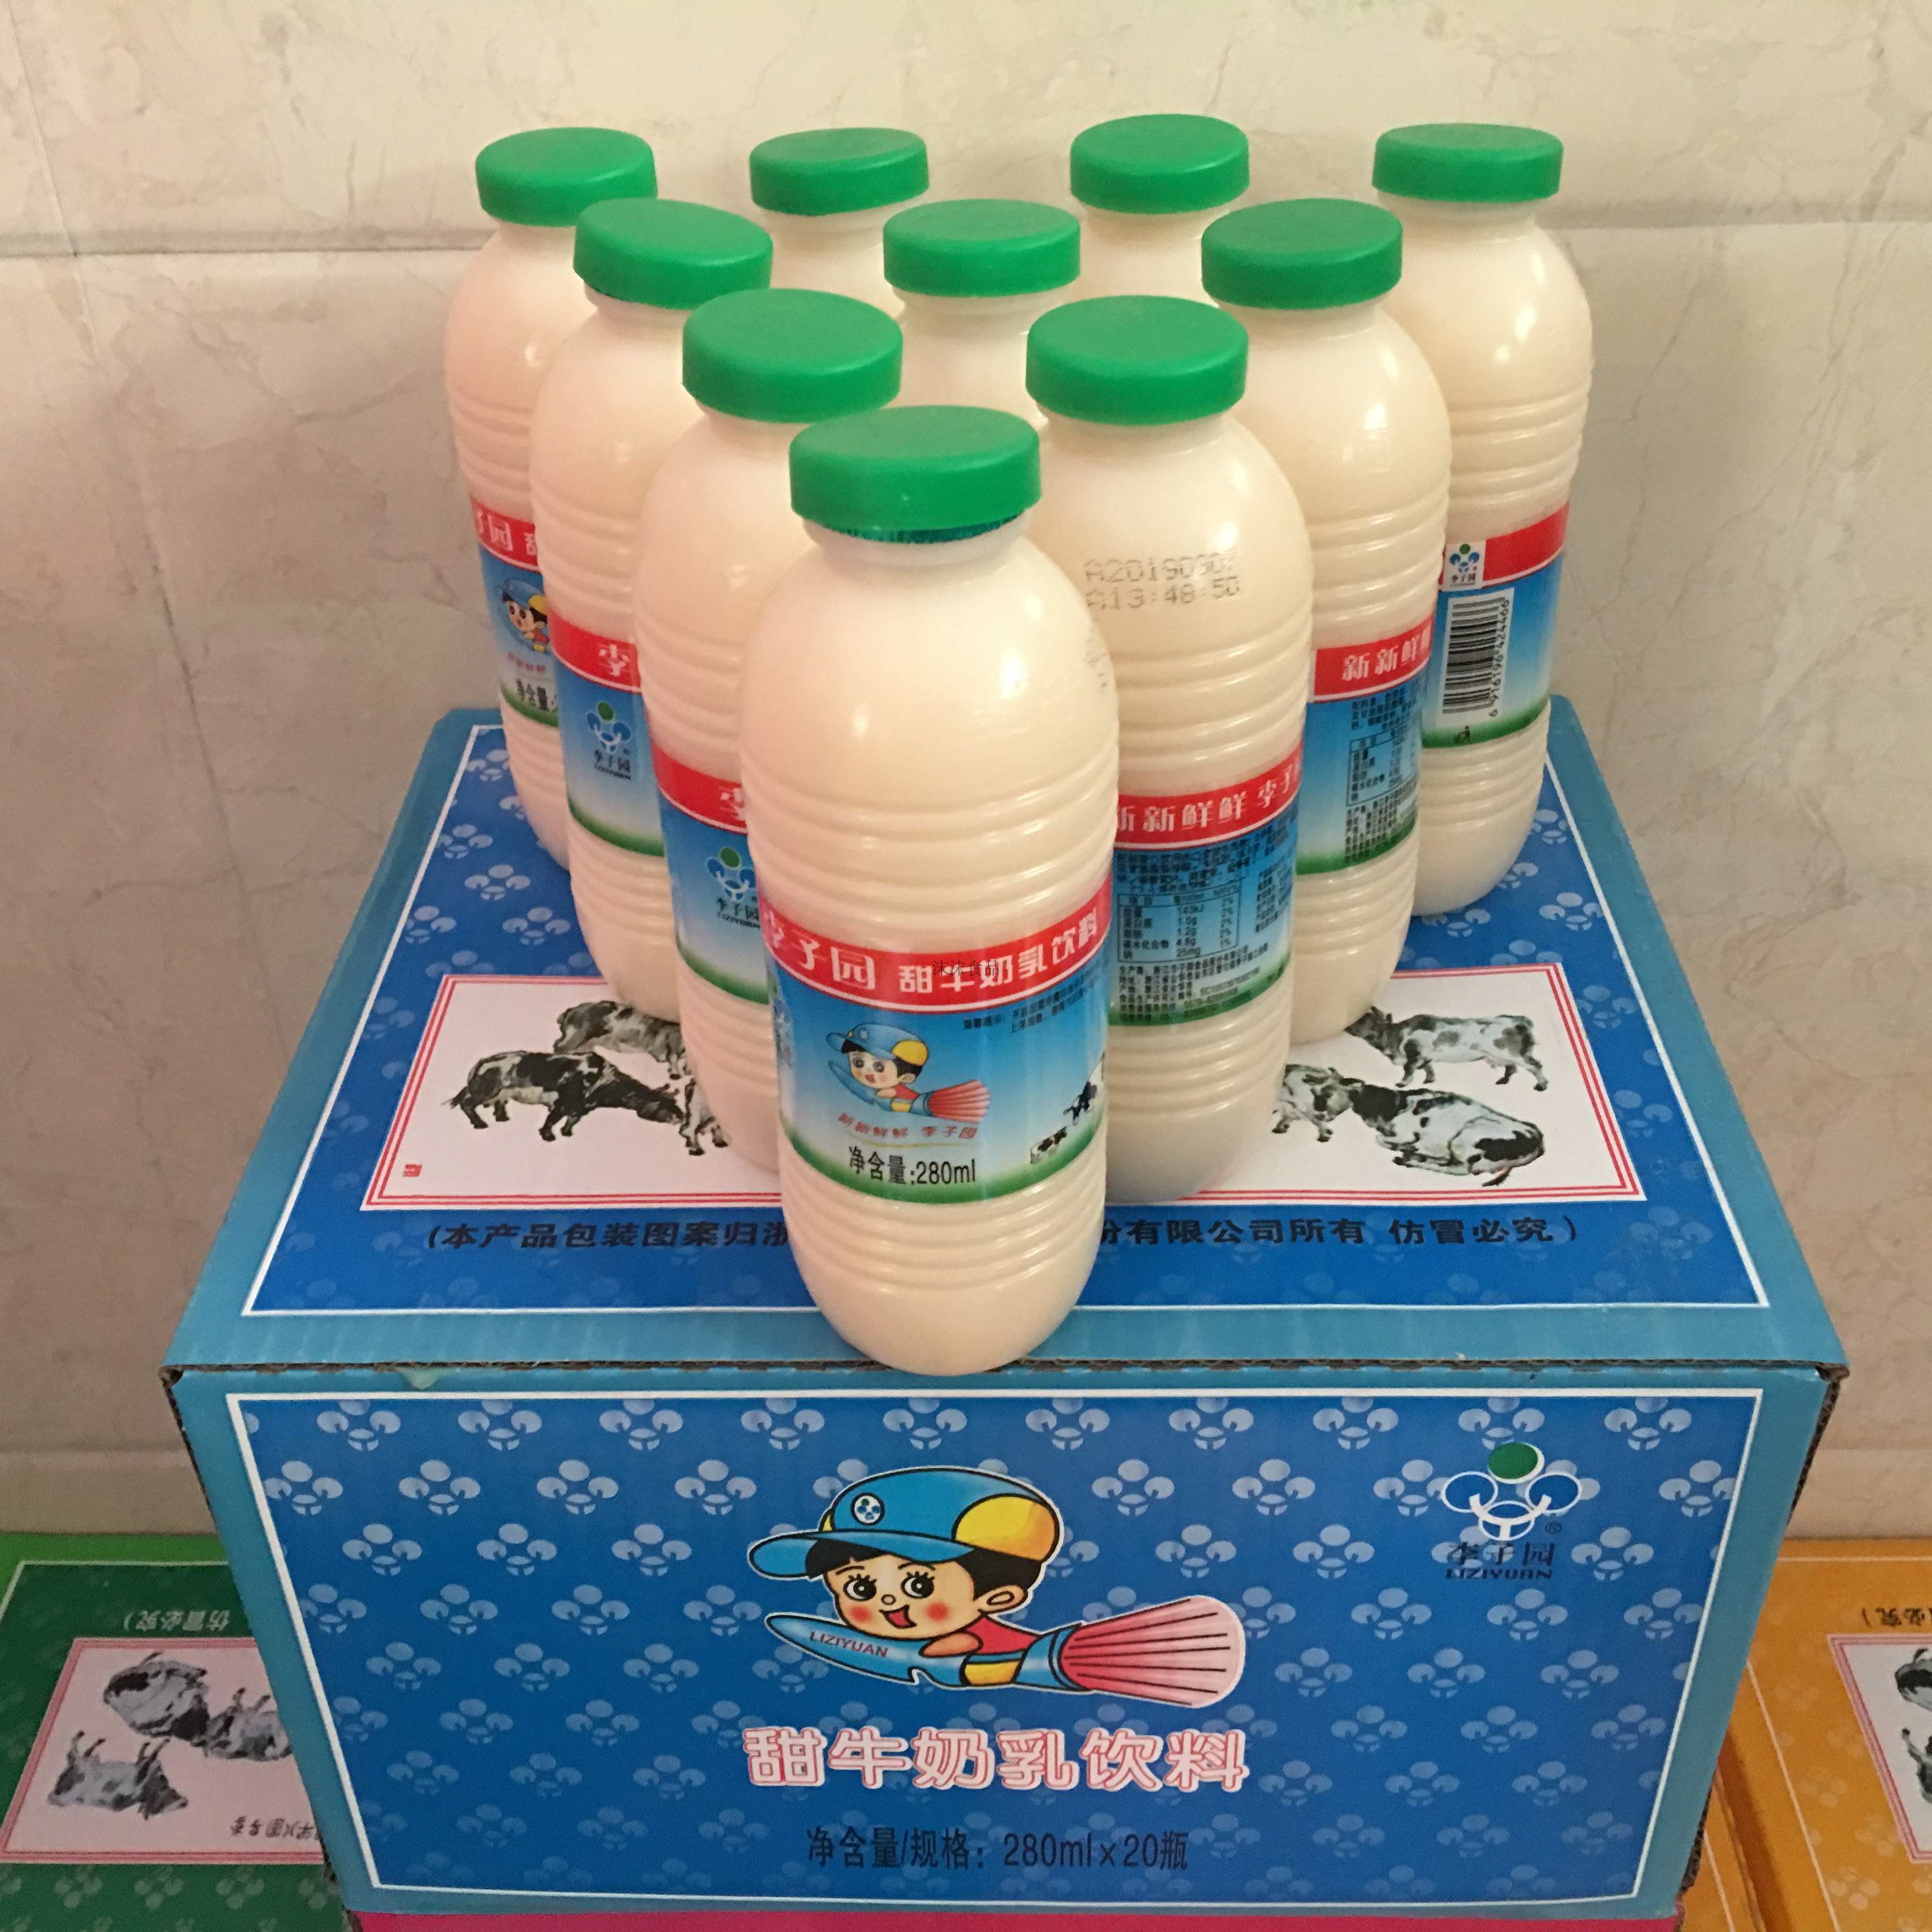 共140 件李子园甜牛奶饮料相关商品